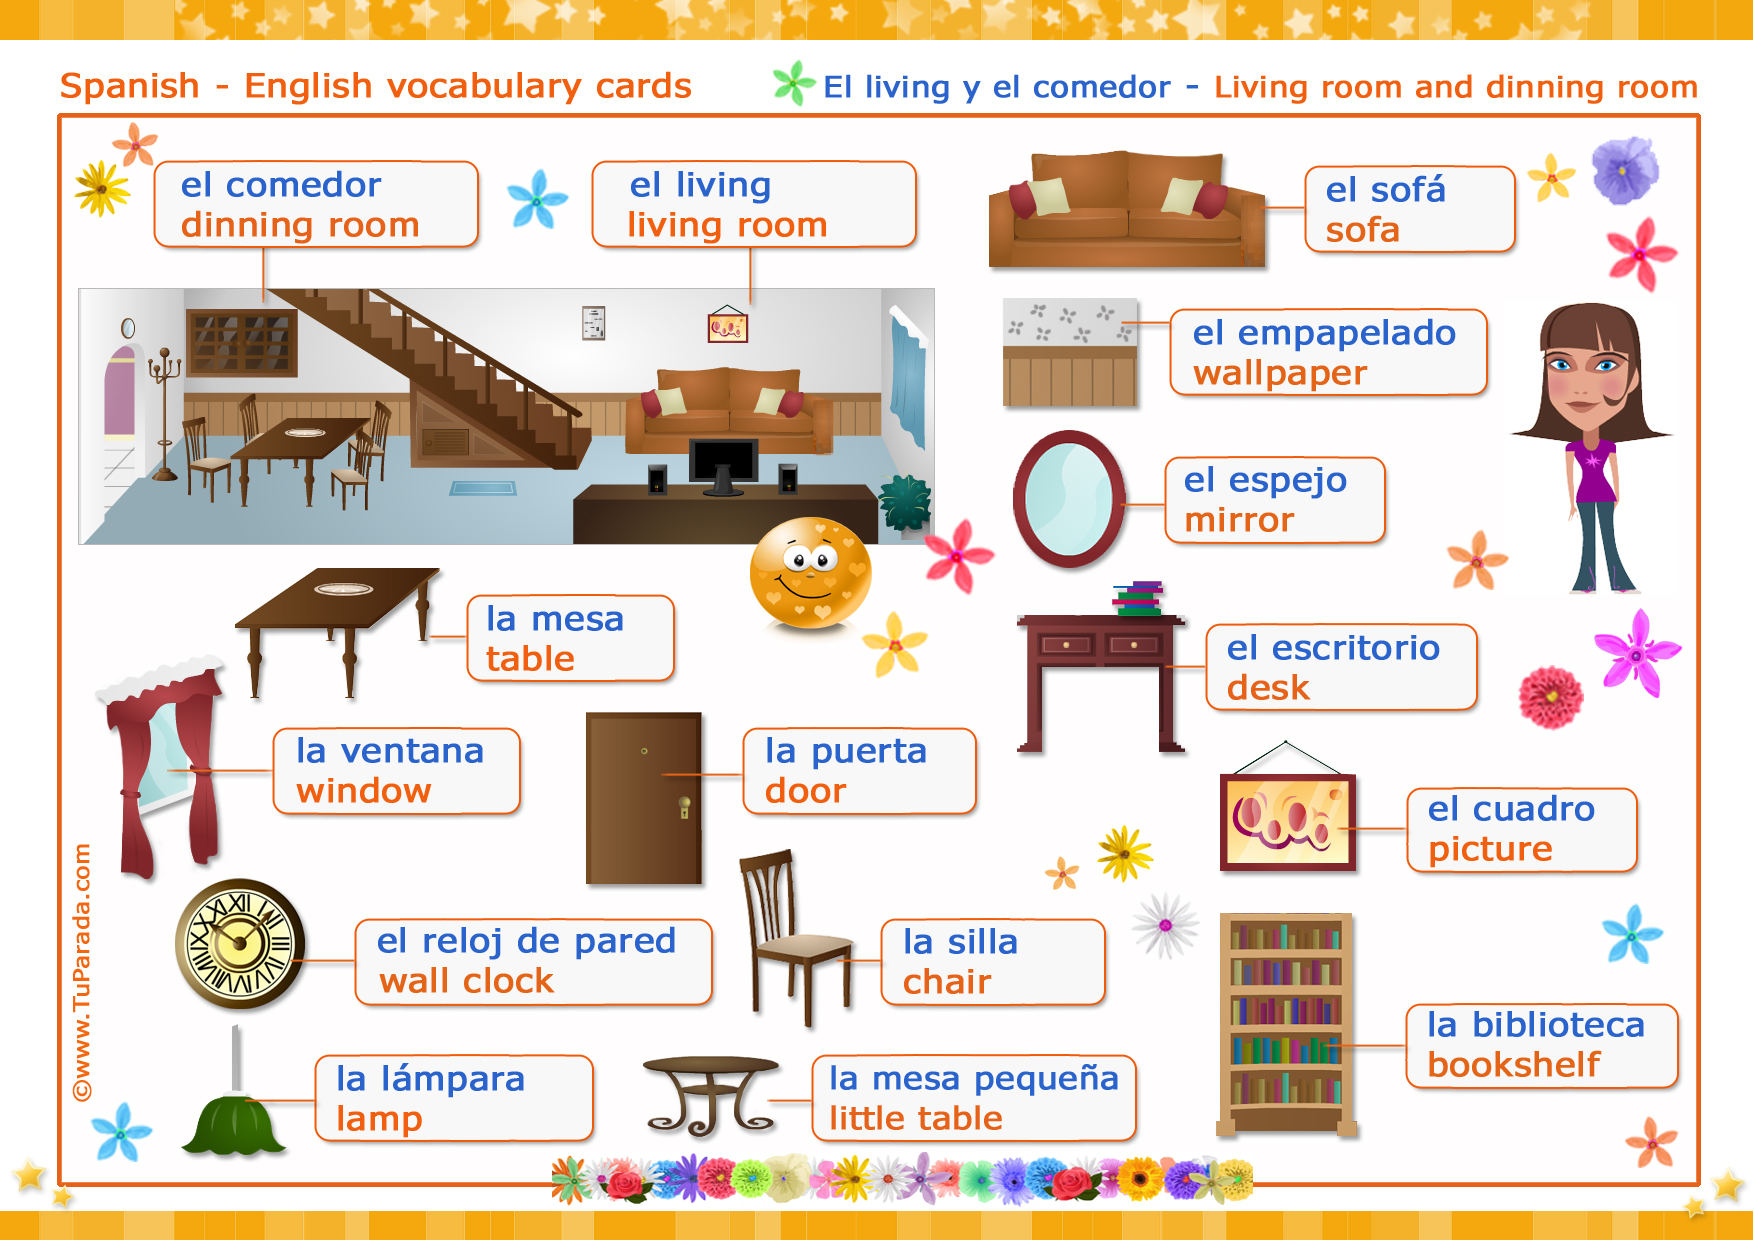 Мебель на испанском языке